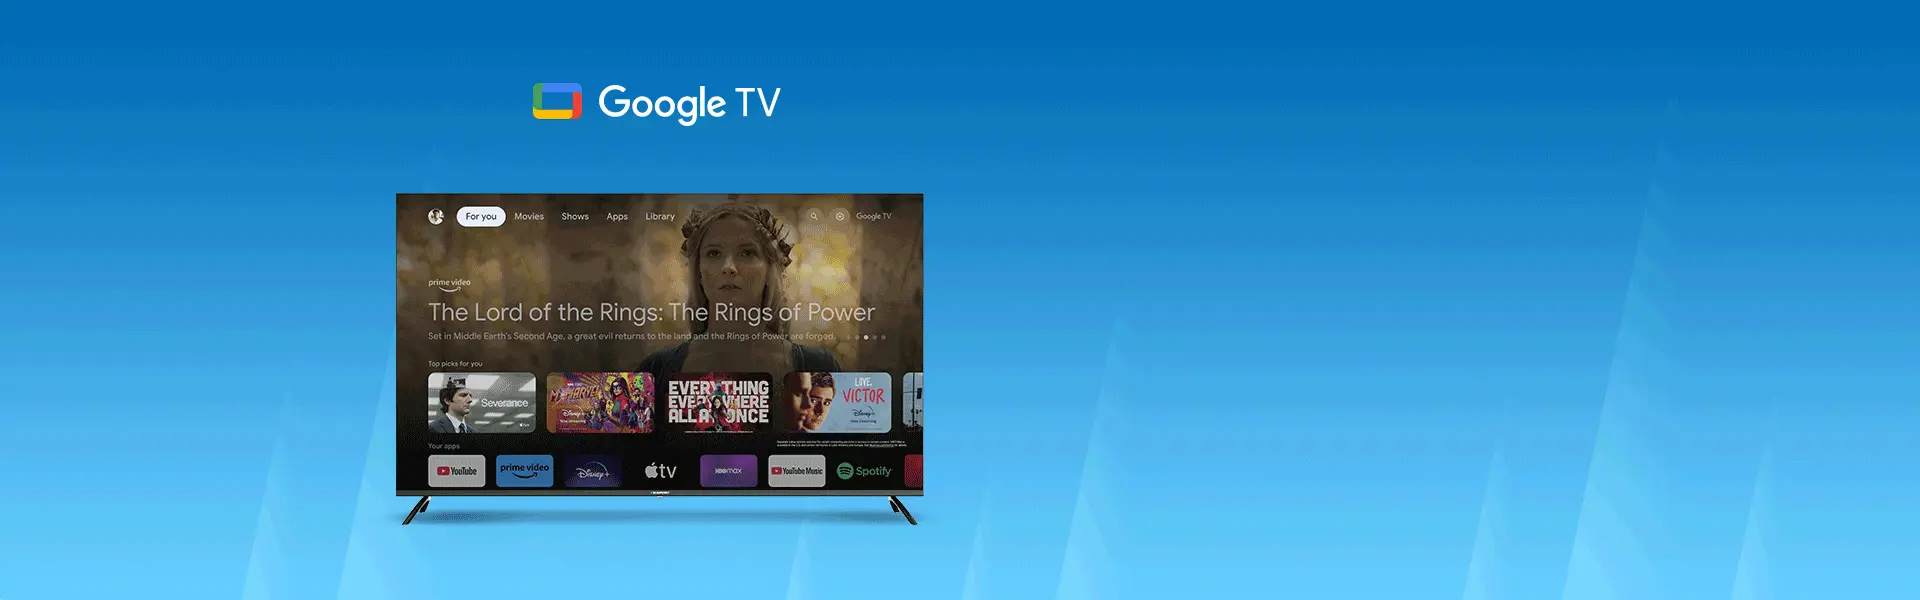 UHD 4K Google TV Blaupunkt 65QBG7000